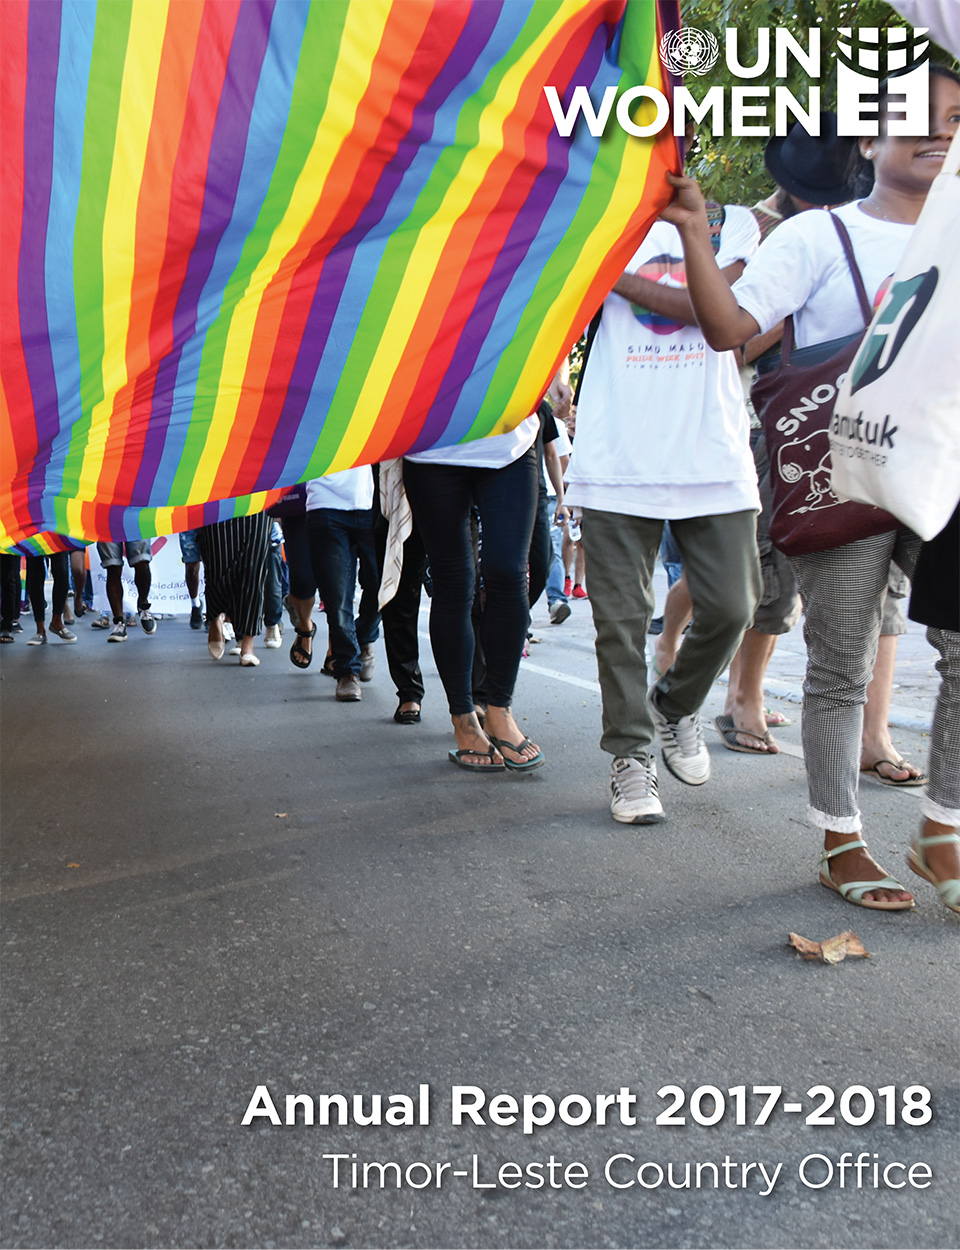 UN Women Timor-Leste Annual Report 2016-2017